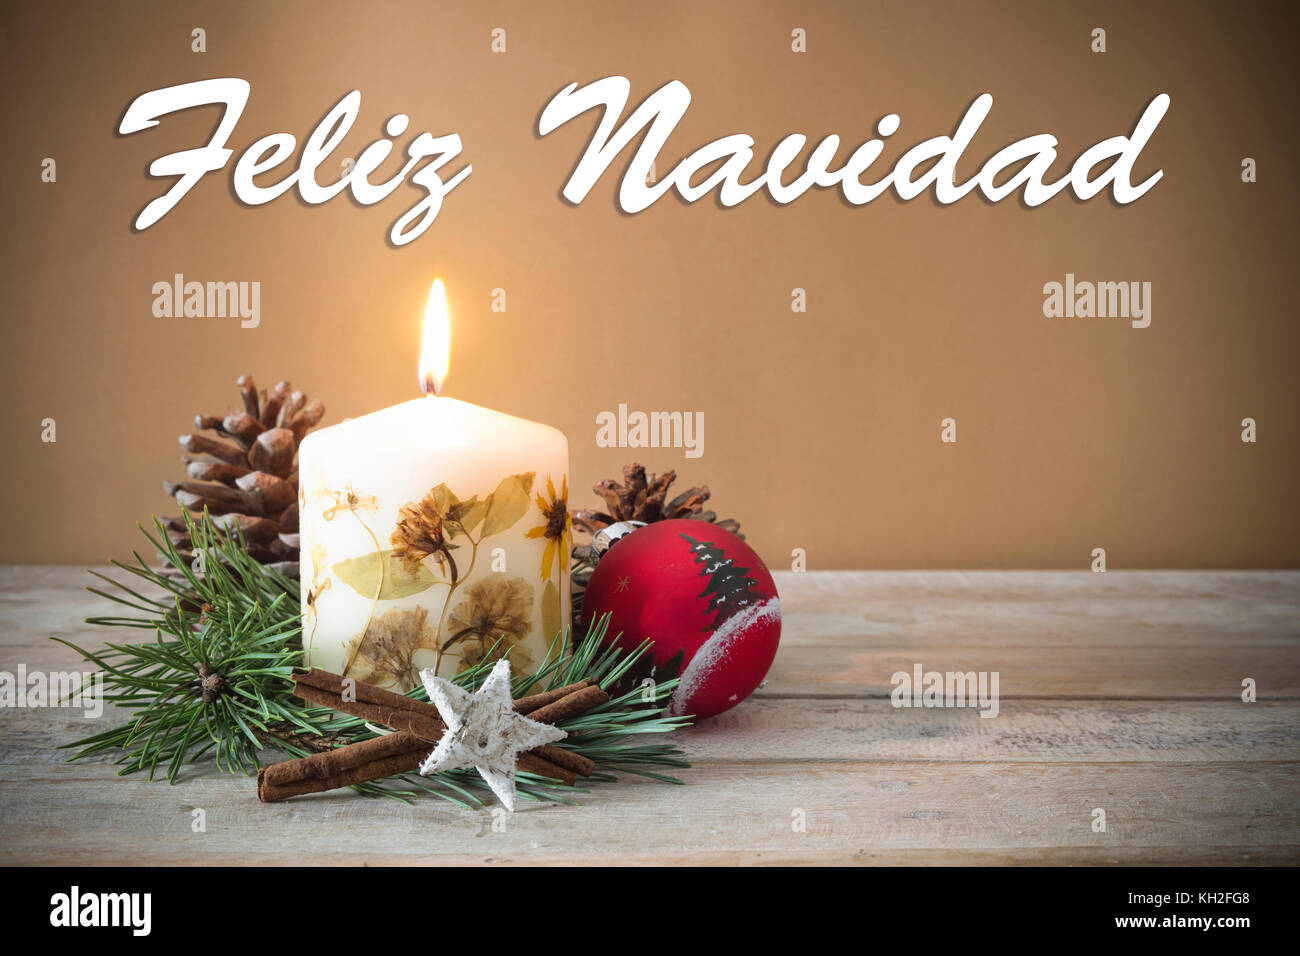 Decoración de Navidad con velas, pinos, adorno navideño, texto en español "feliz navidad" en el fondo de madera Fotografía de stock Alamy